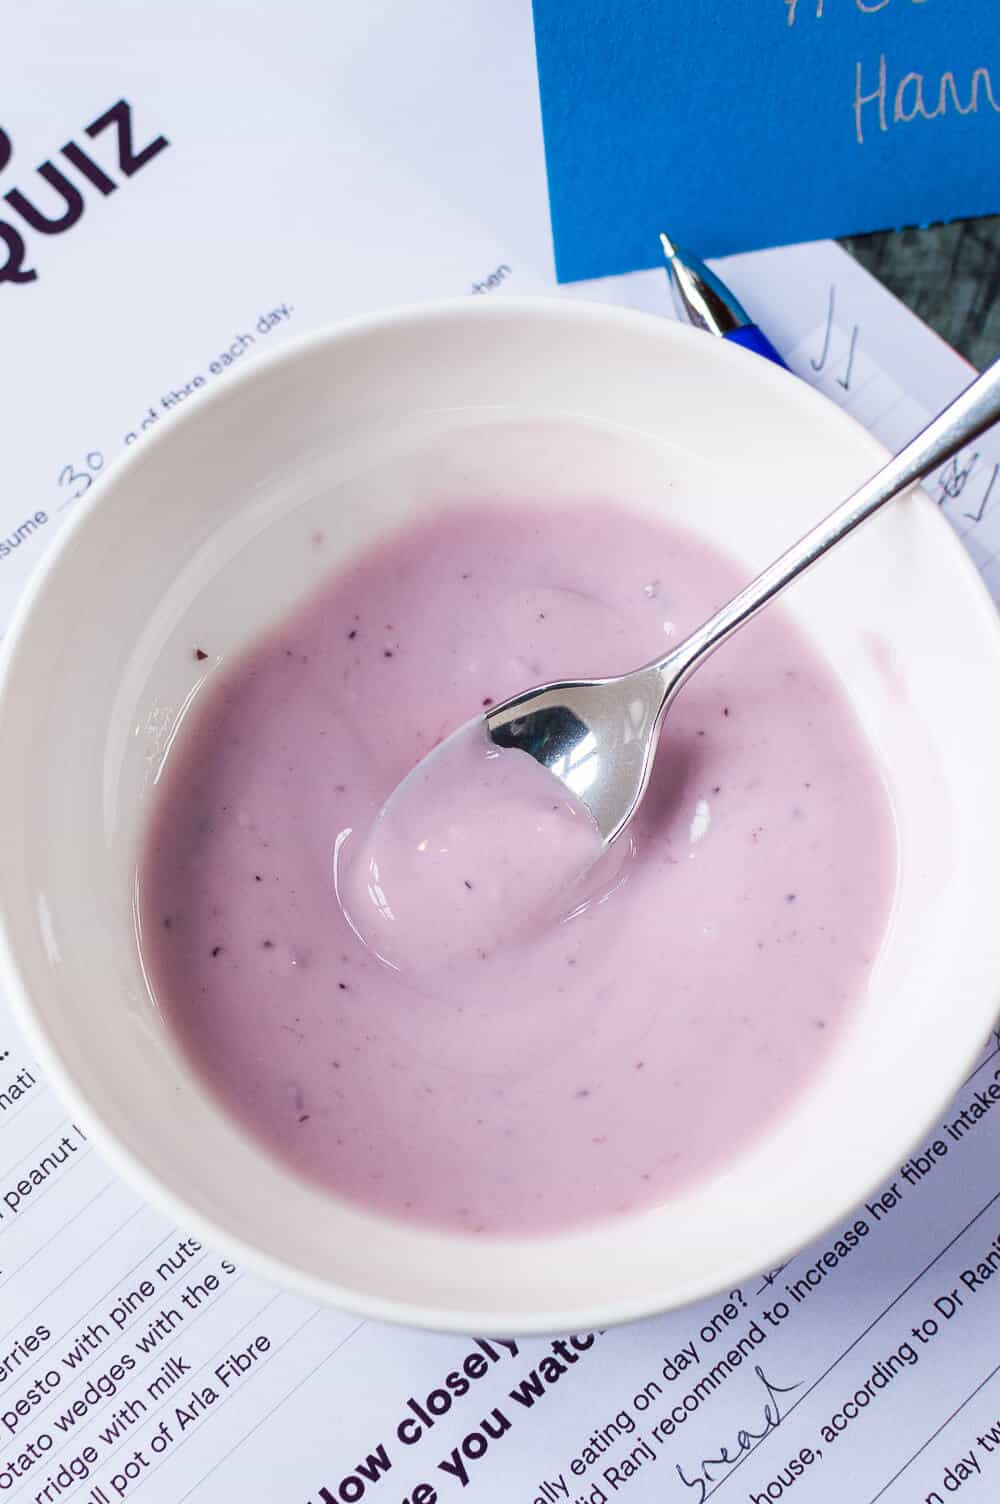 a bowl of arla fibre yogurt